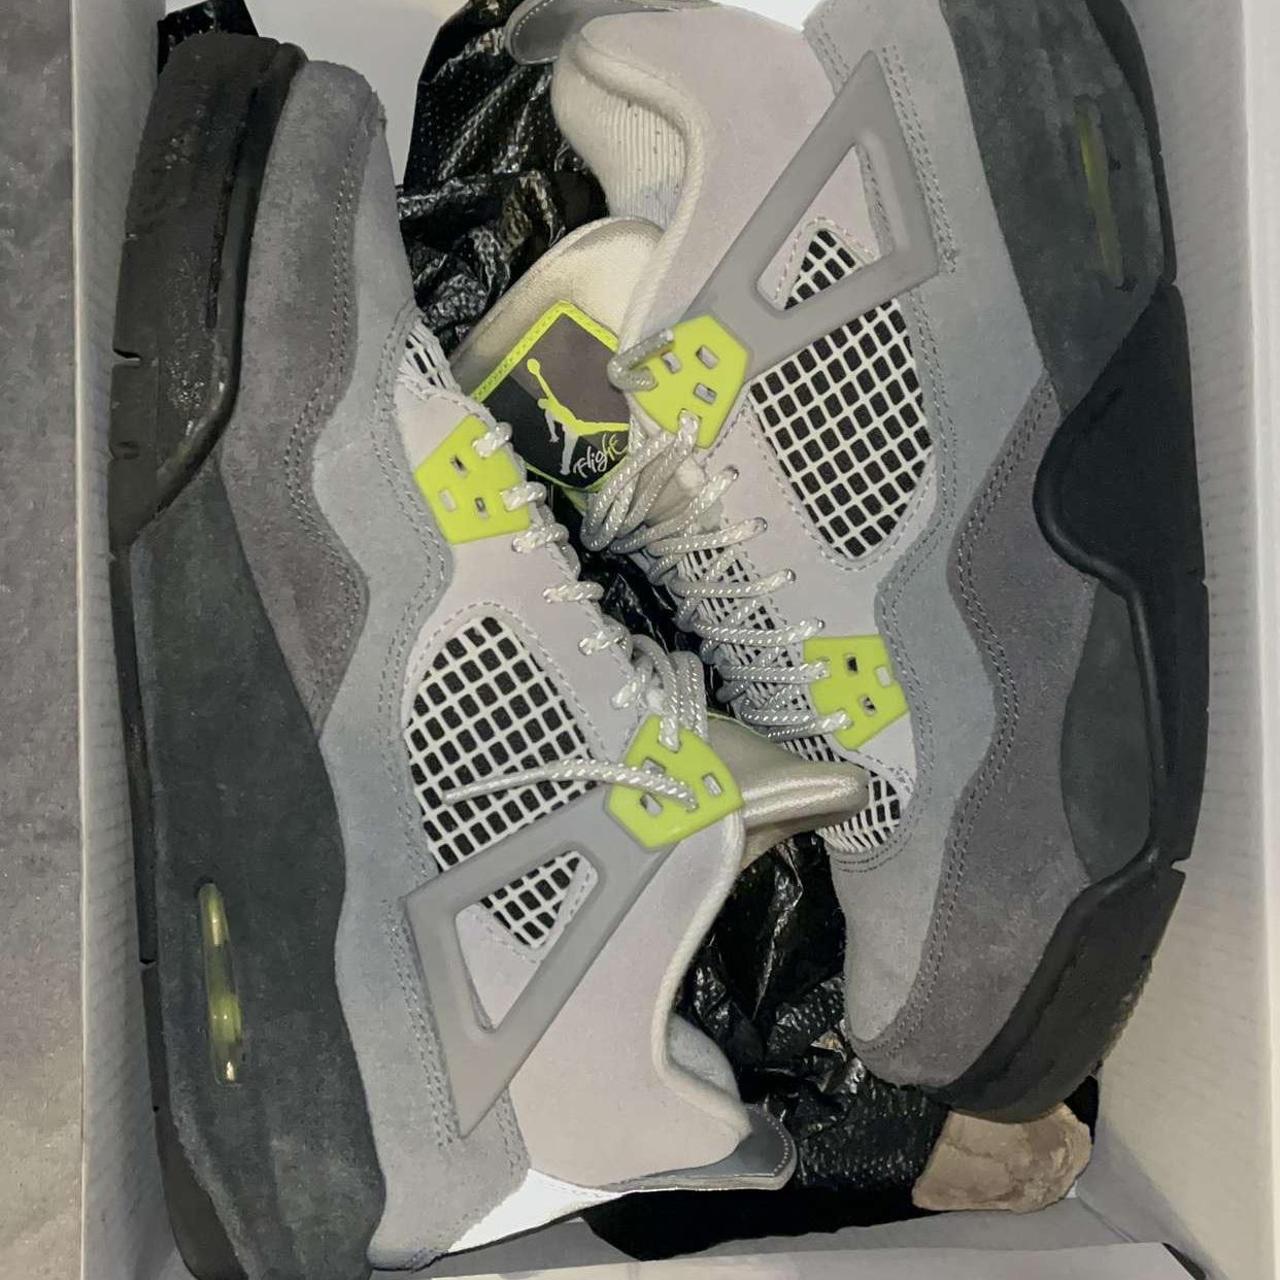 Jordans V IV III grey colour with reflective print. - Depop